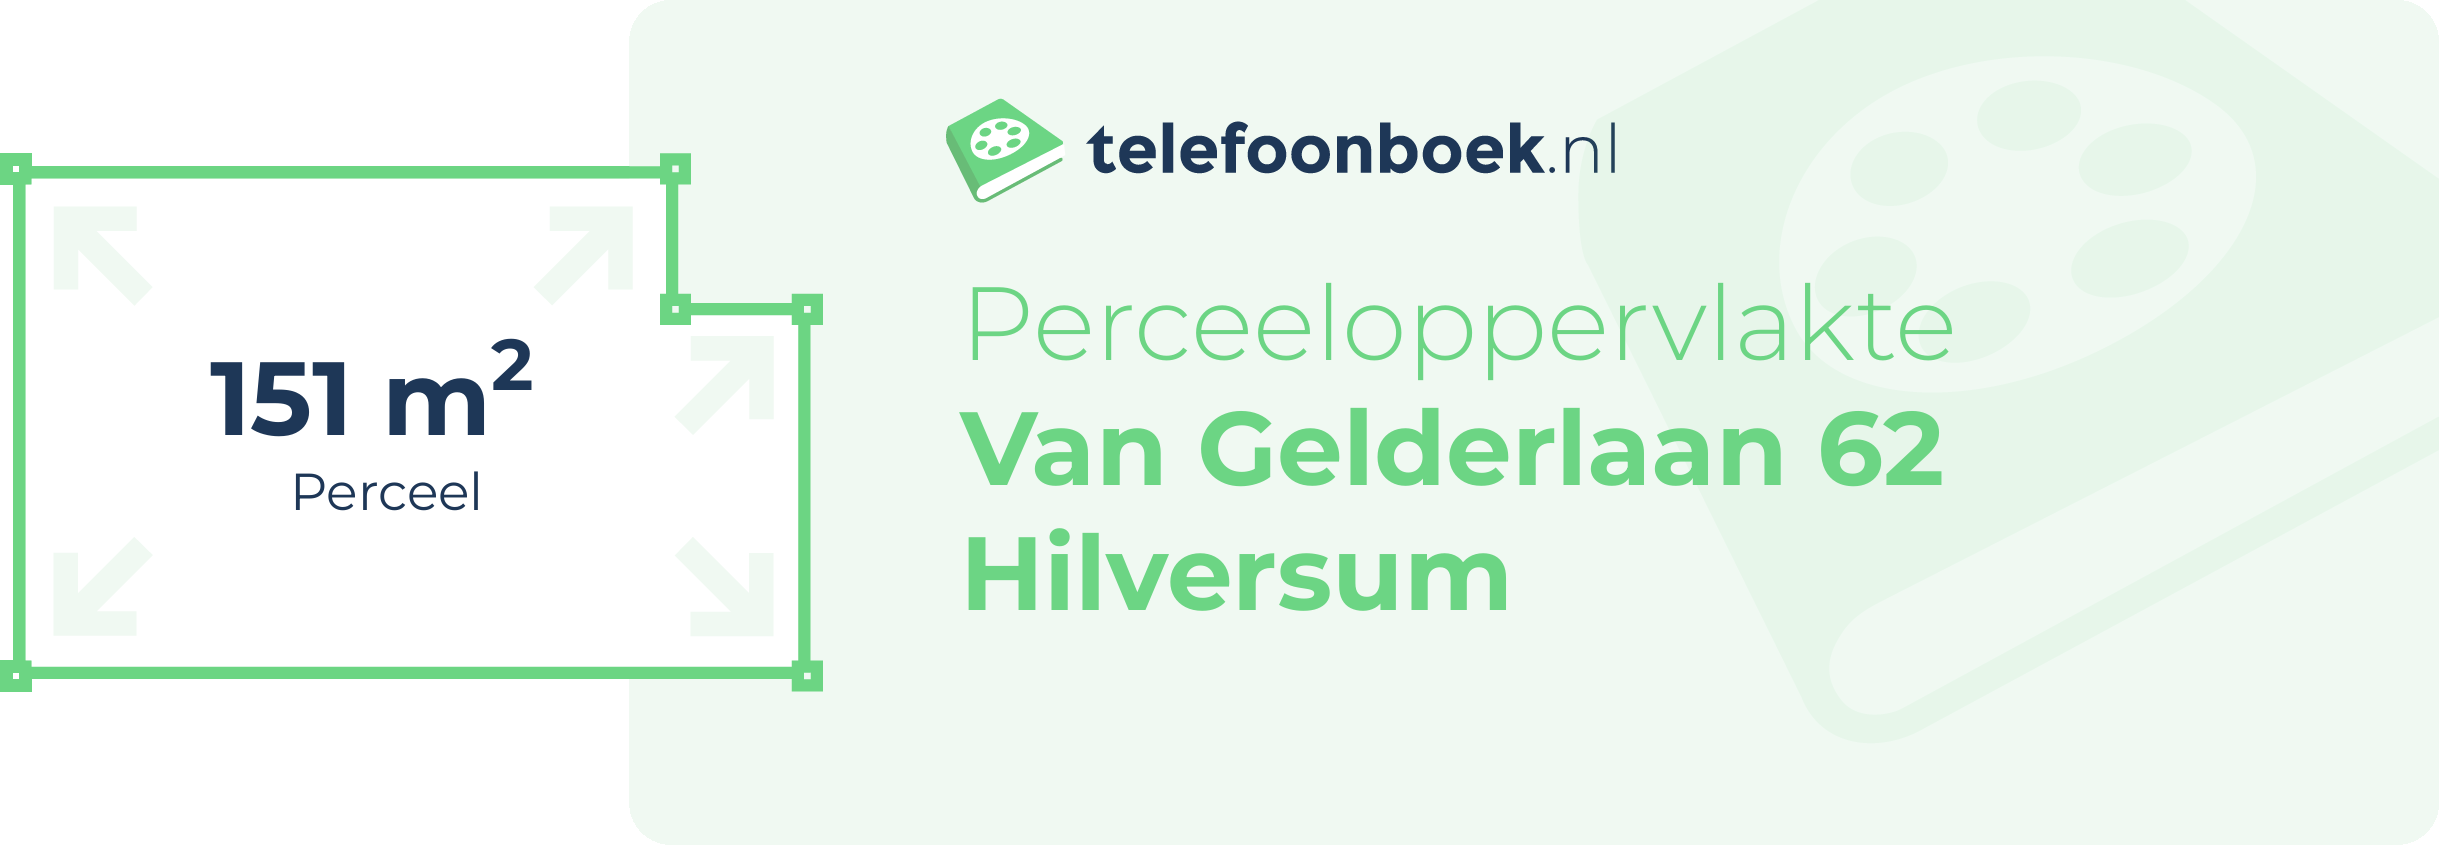 Perceeloppervlakte Van Gelderlaan 62 Hilversum